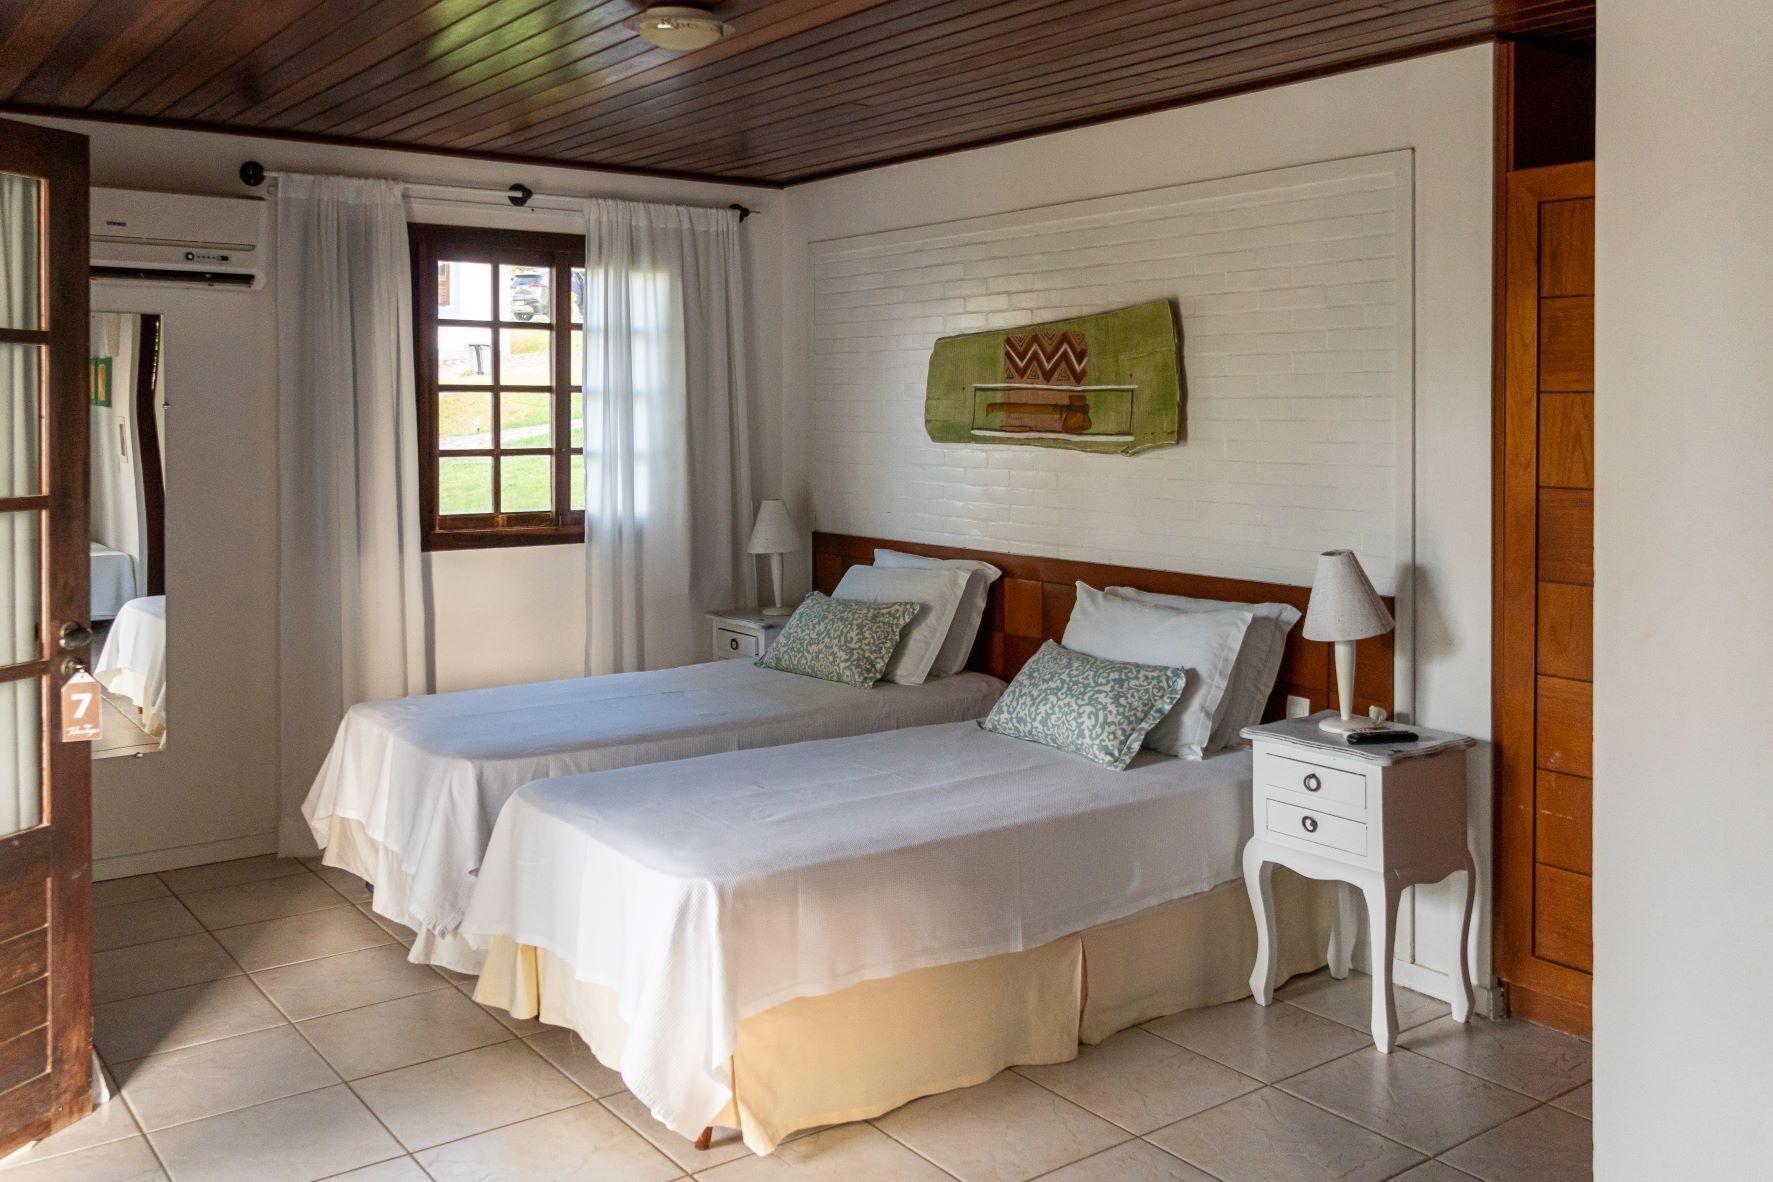 Bedroom 3, Tibau Lagoa, Tibau do Sul